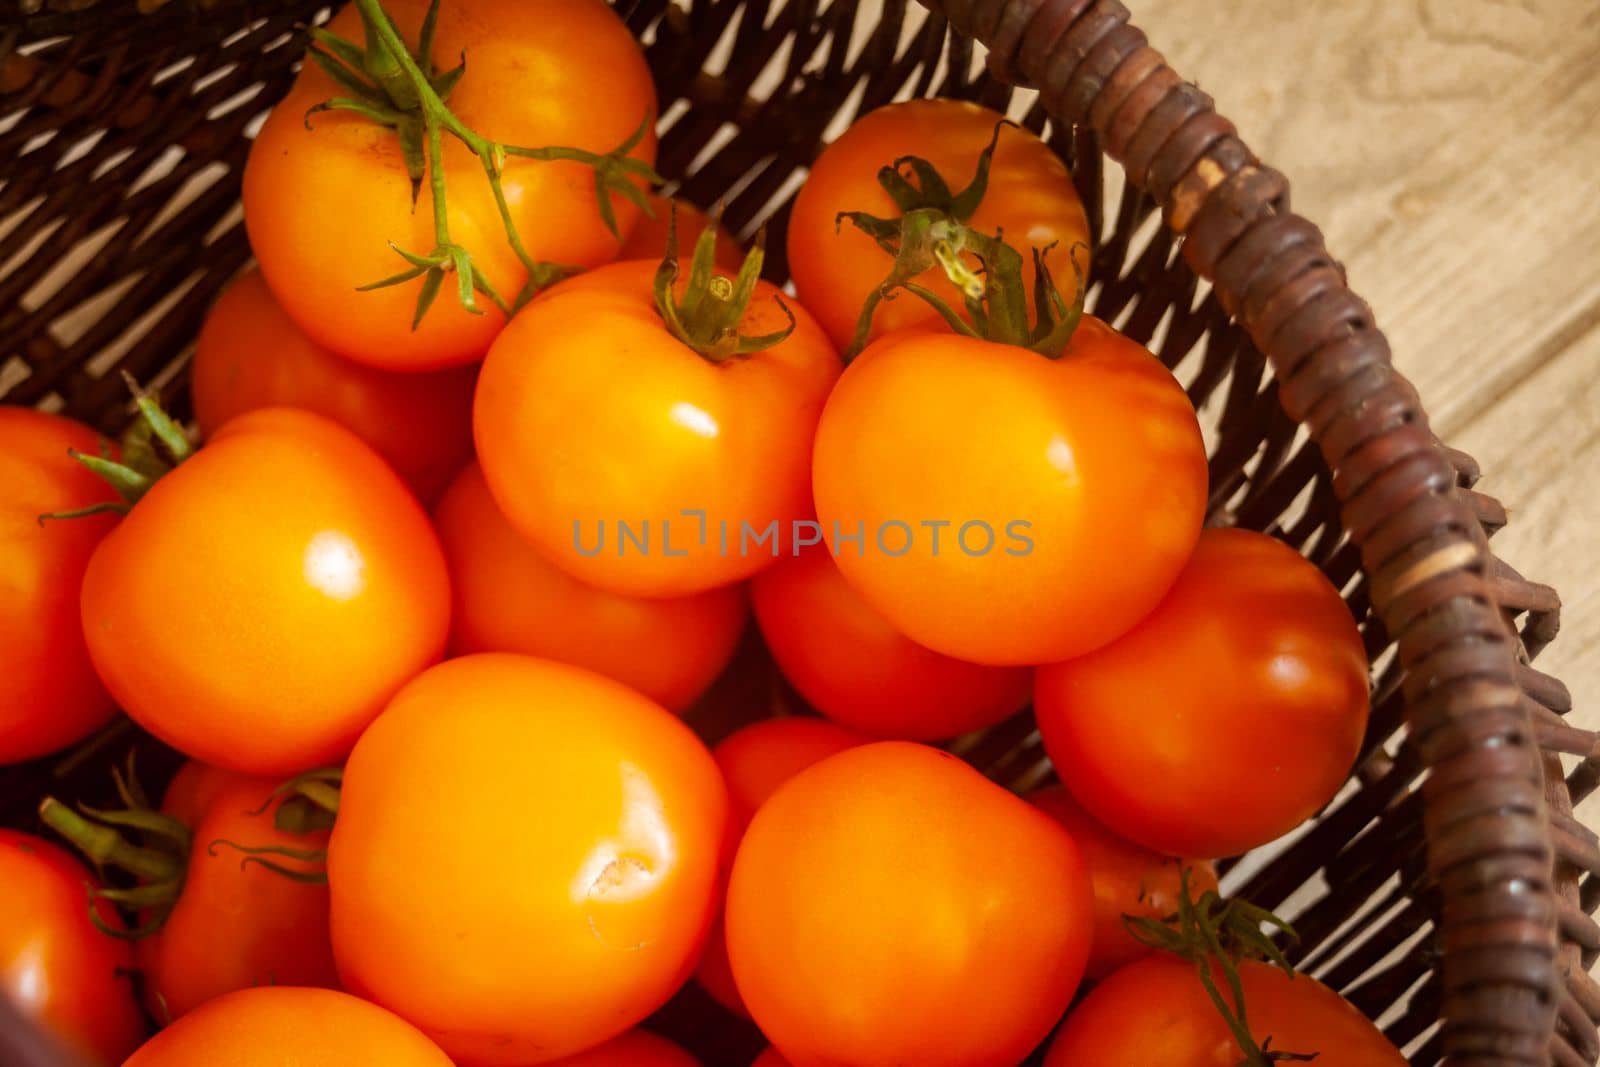 Fresh orange tomatoes in a wicker basket